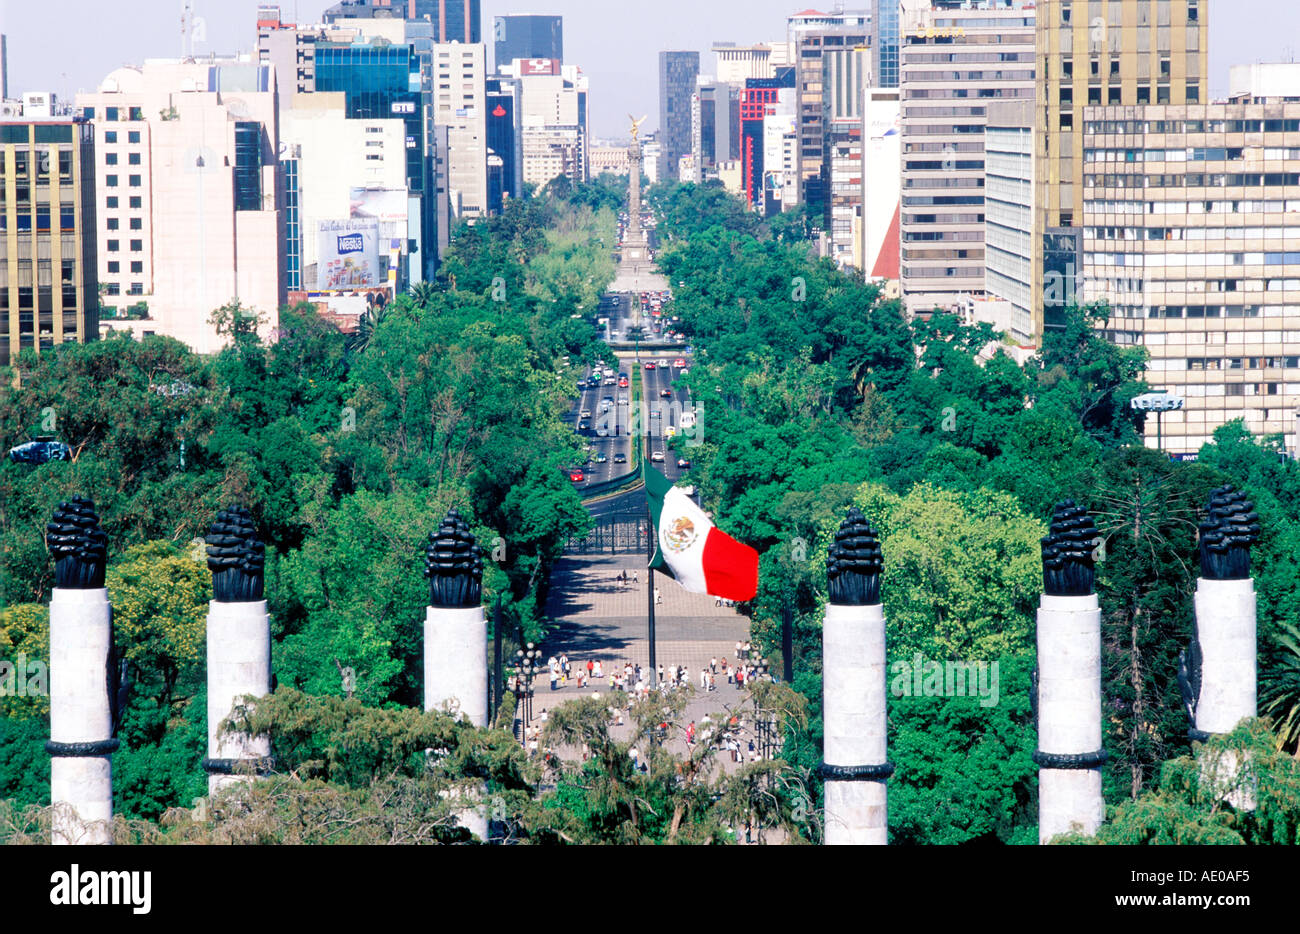 Afficher le long de l'Avenida Reforma sur le Monumento a los Niños Heroes Parc de Chapultepec Mexico Mexique Banque D'Images